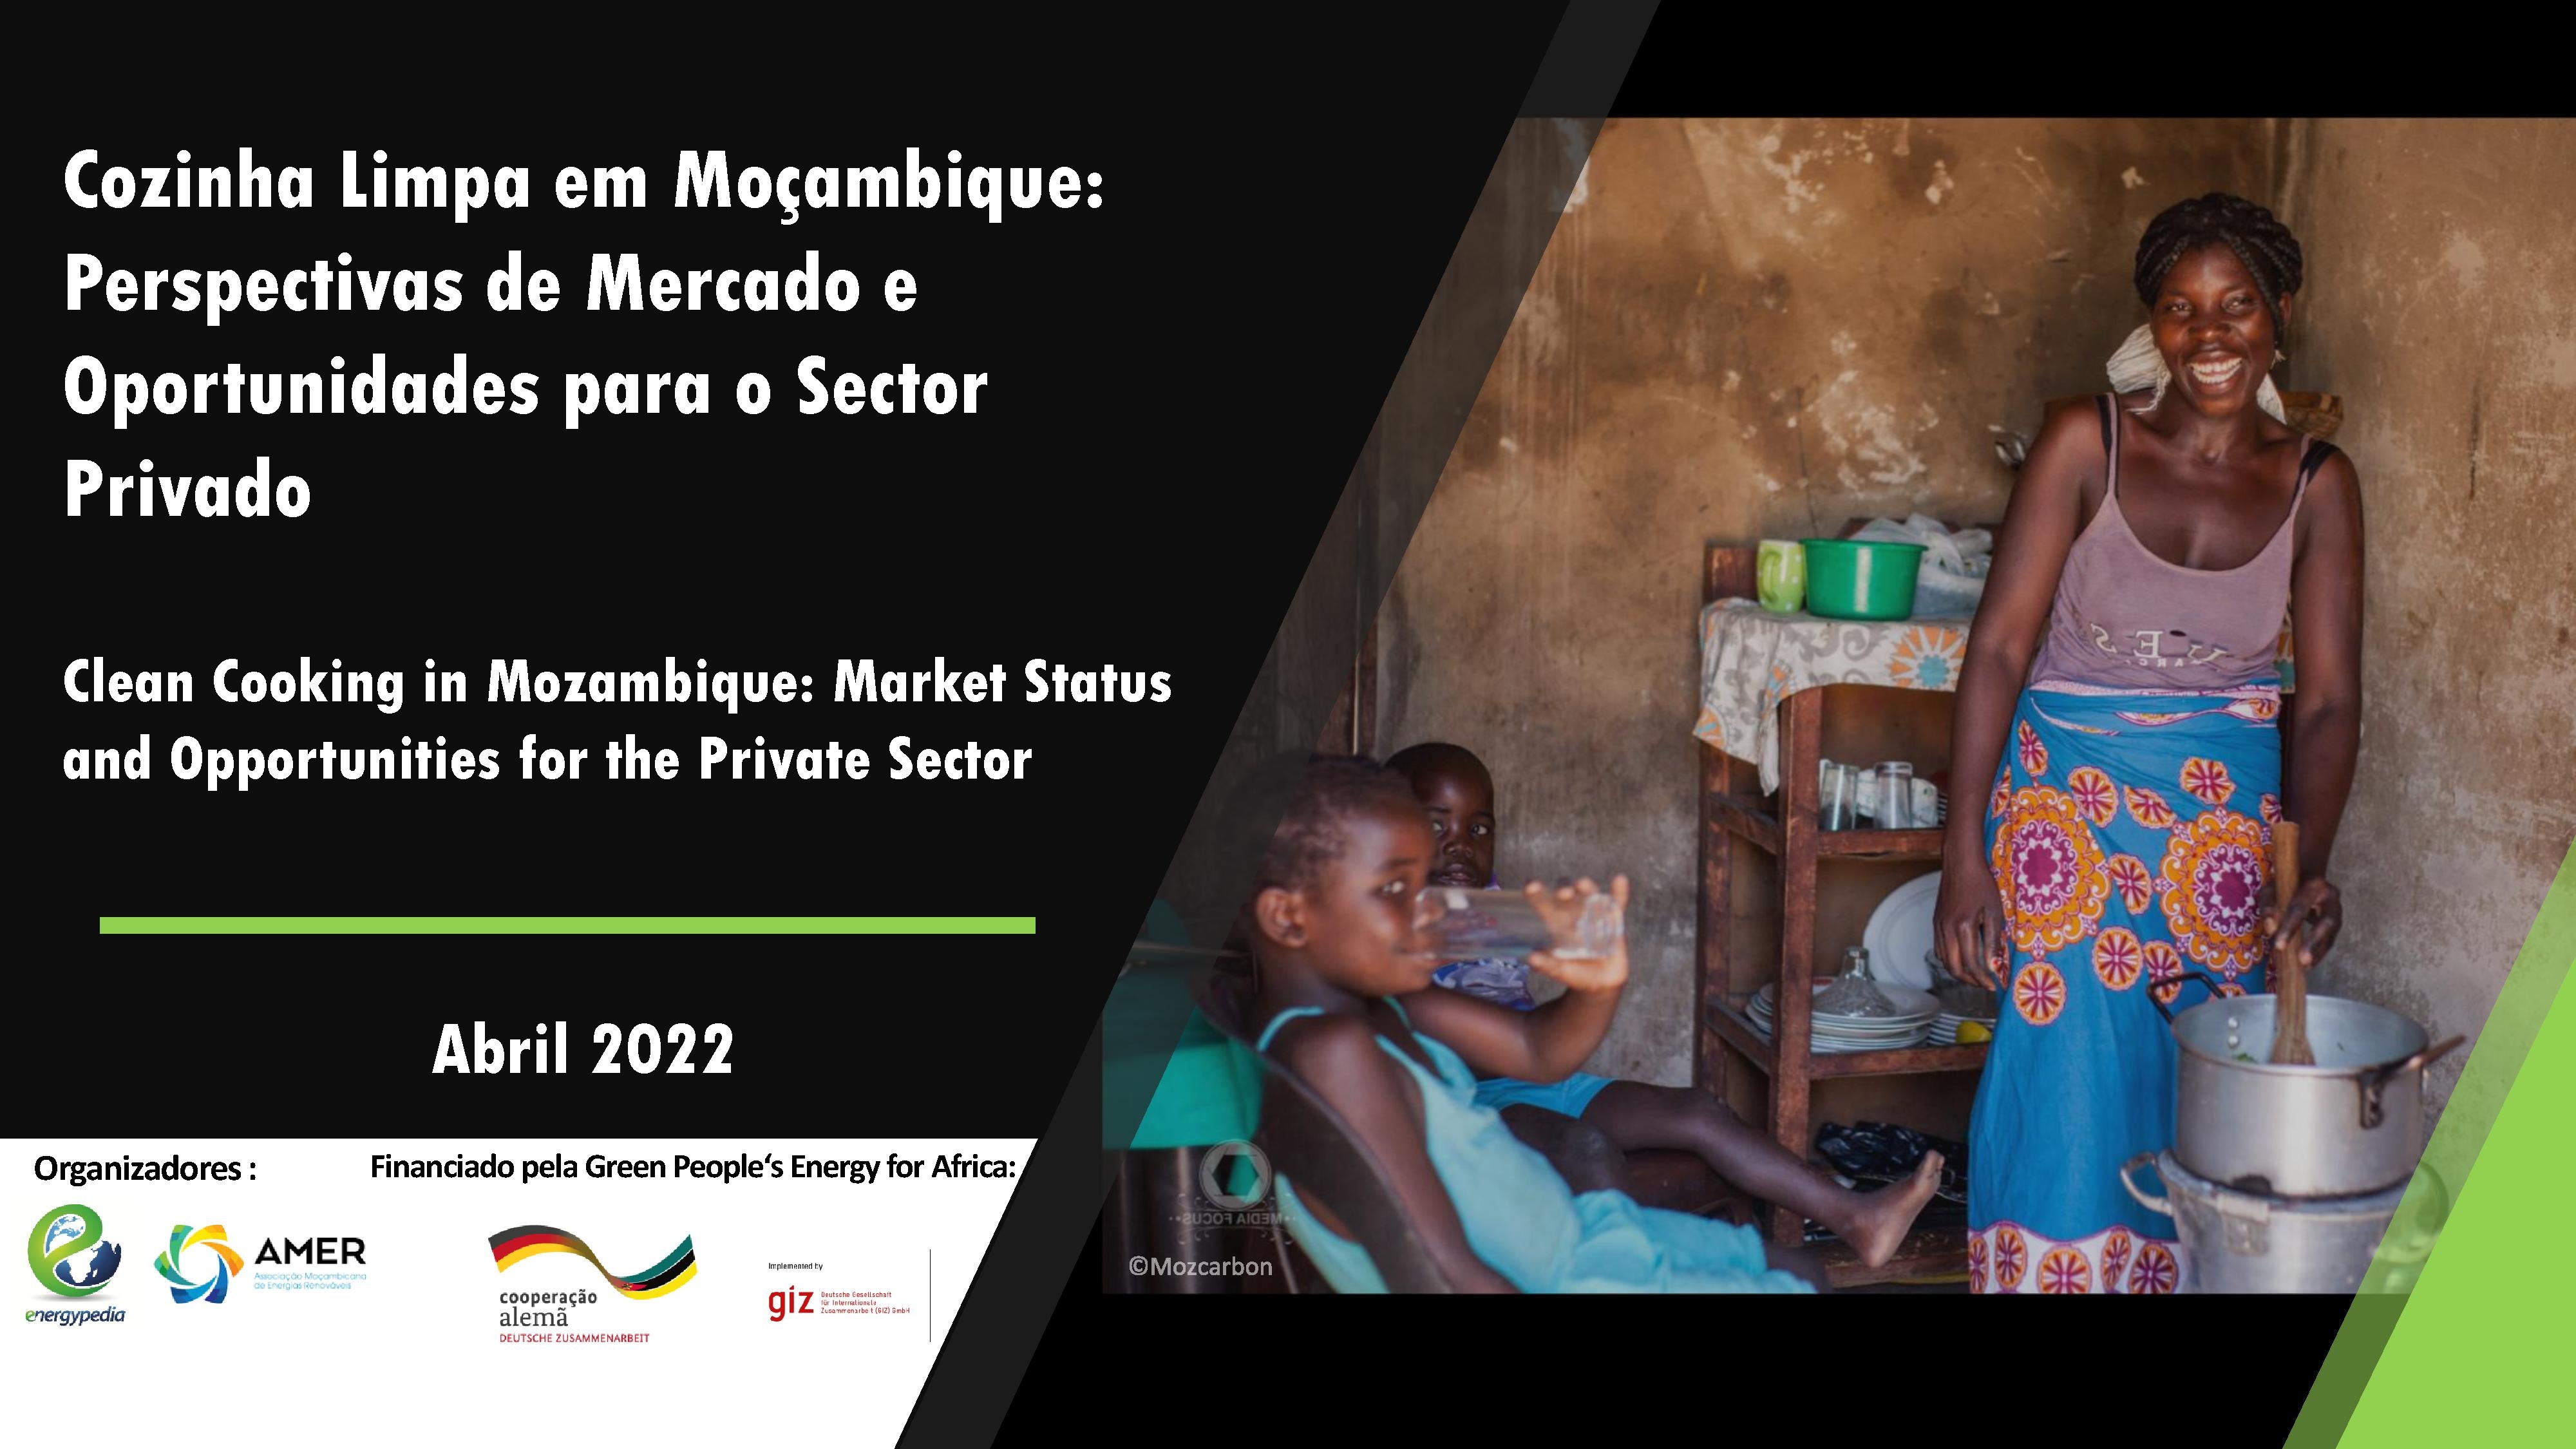 Cozinha Limpa em Moçambique - Perspectivas de Mercado e Oportunidades para o Sector Privado